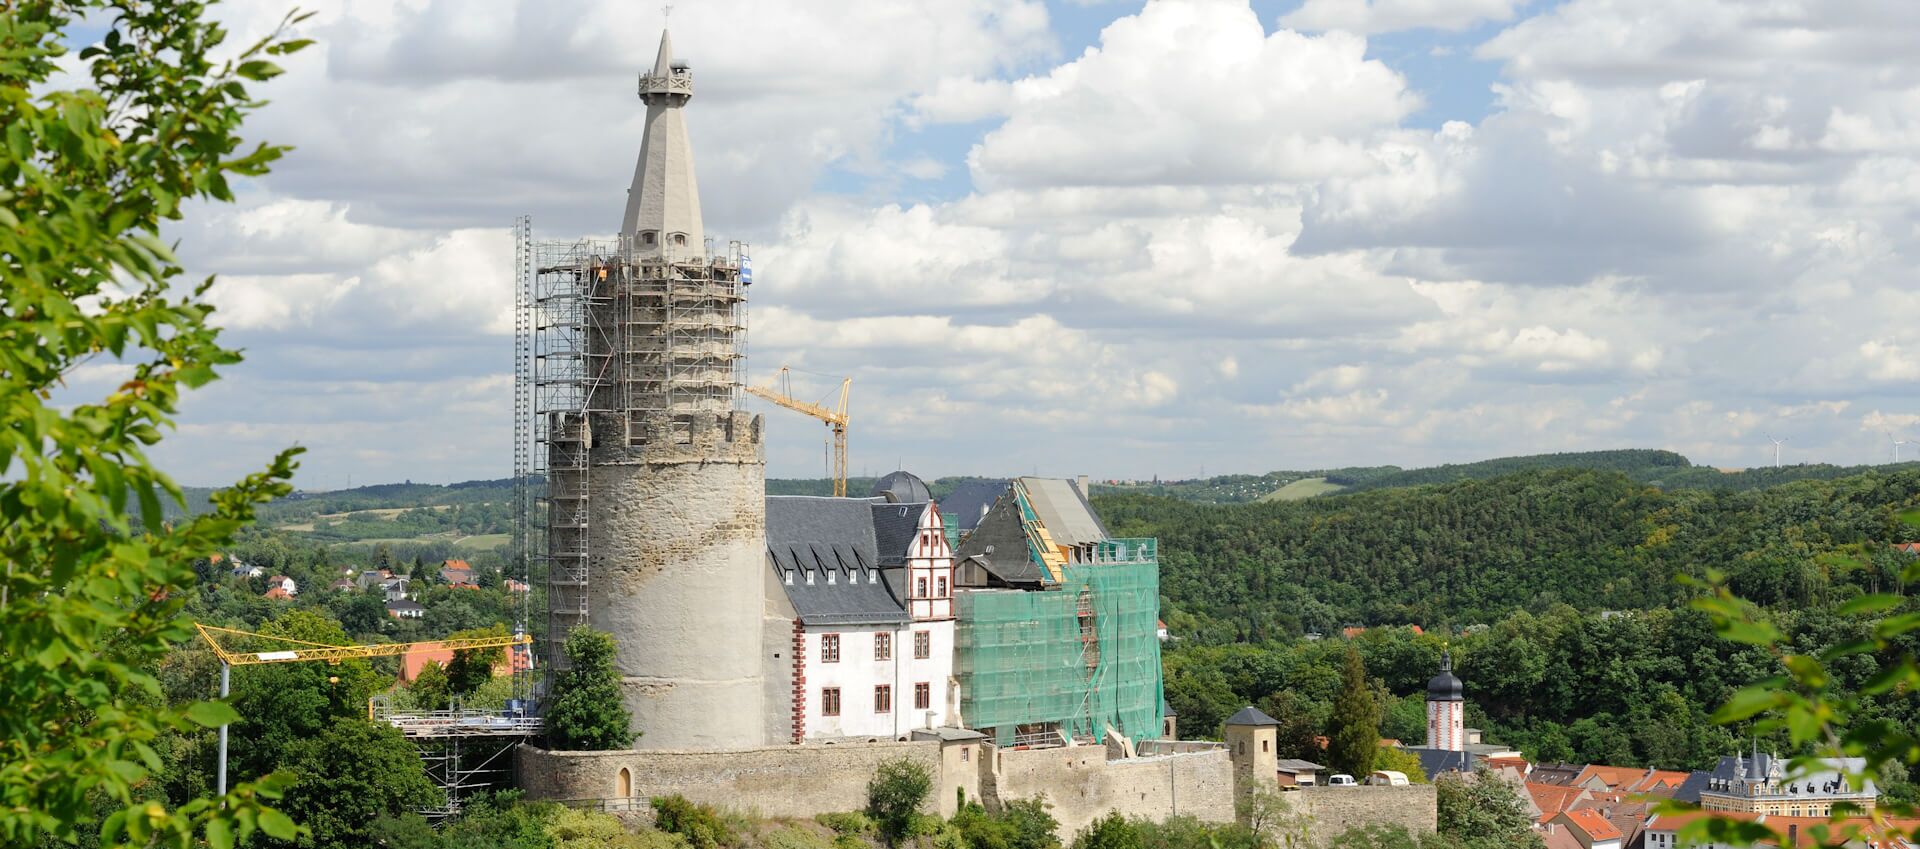 Headerbild Sanierung Turm Osterburg